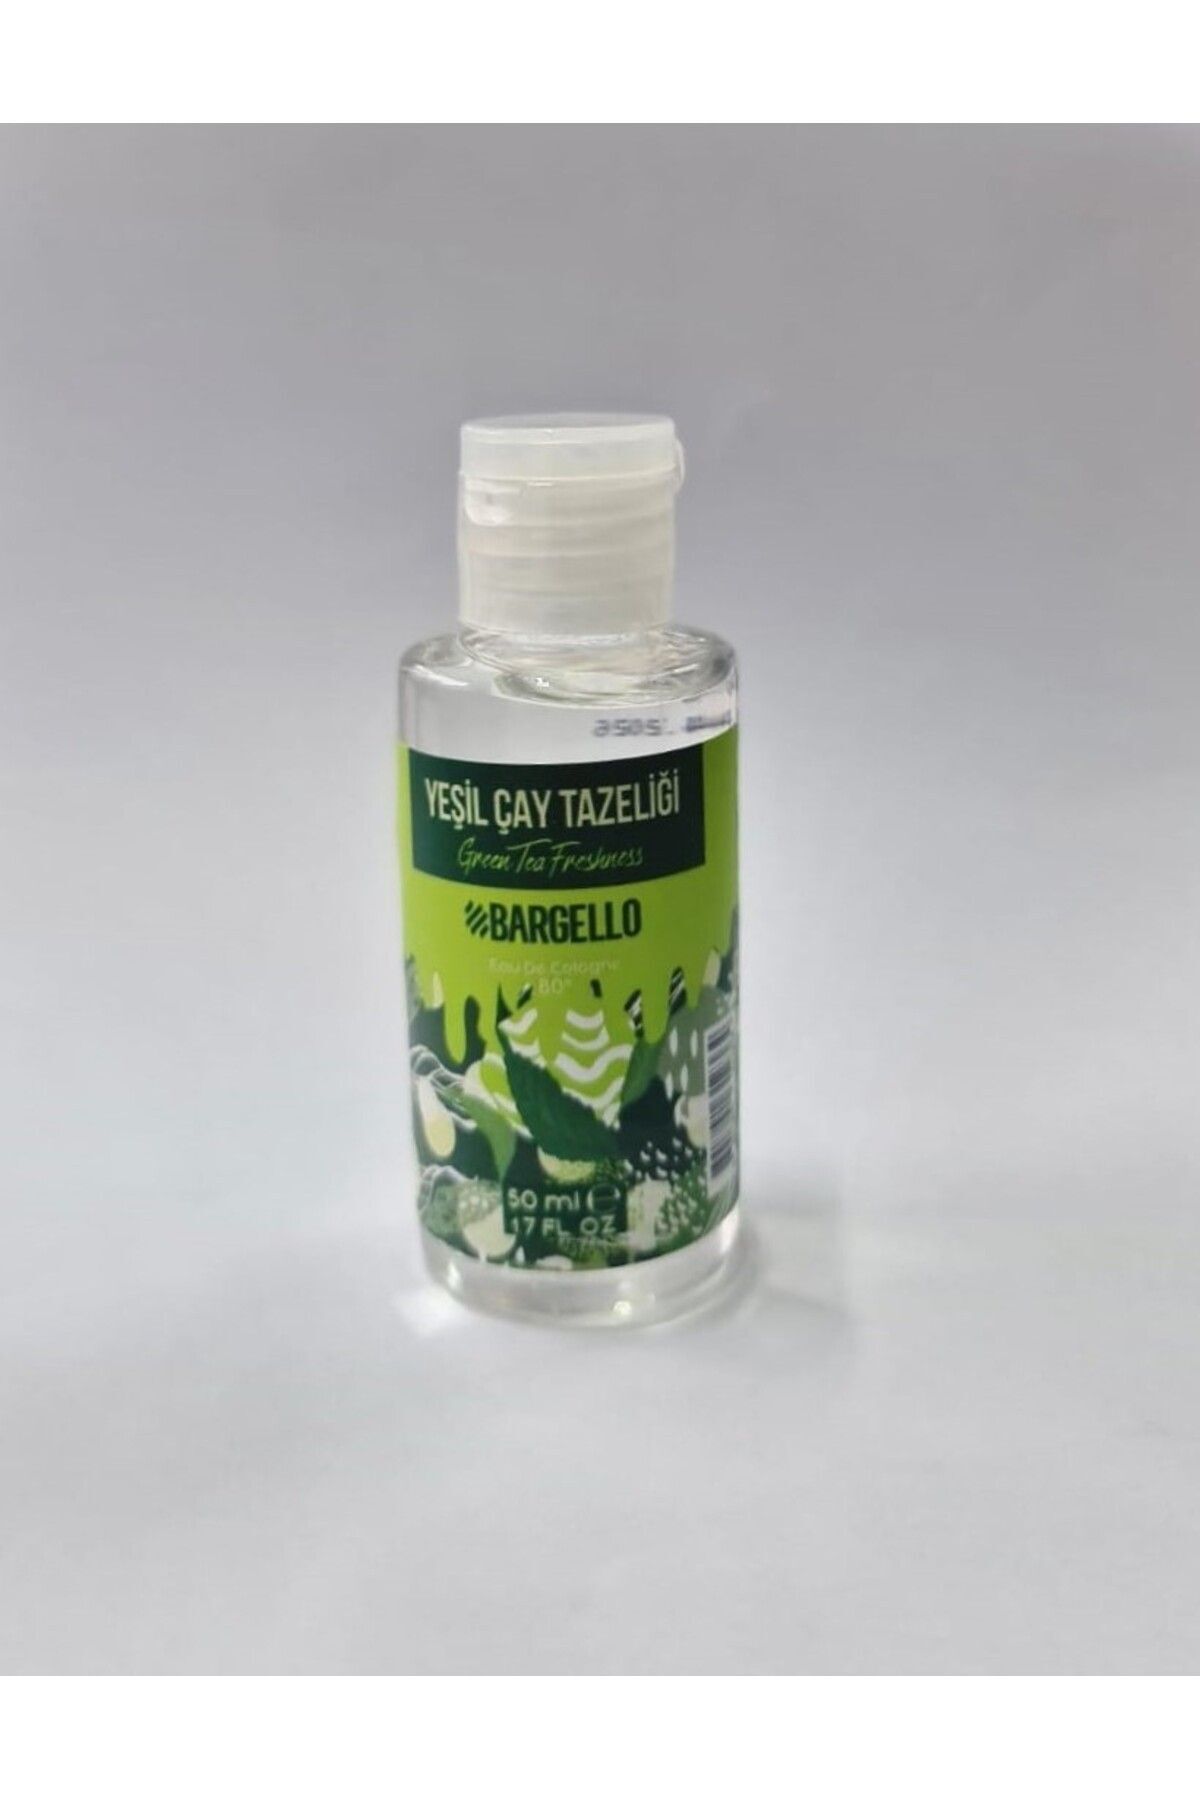 Bargello Yeşilçay Tazeliği 50 ml Plastik Dökme Kolonya Edc